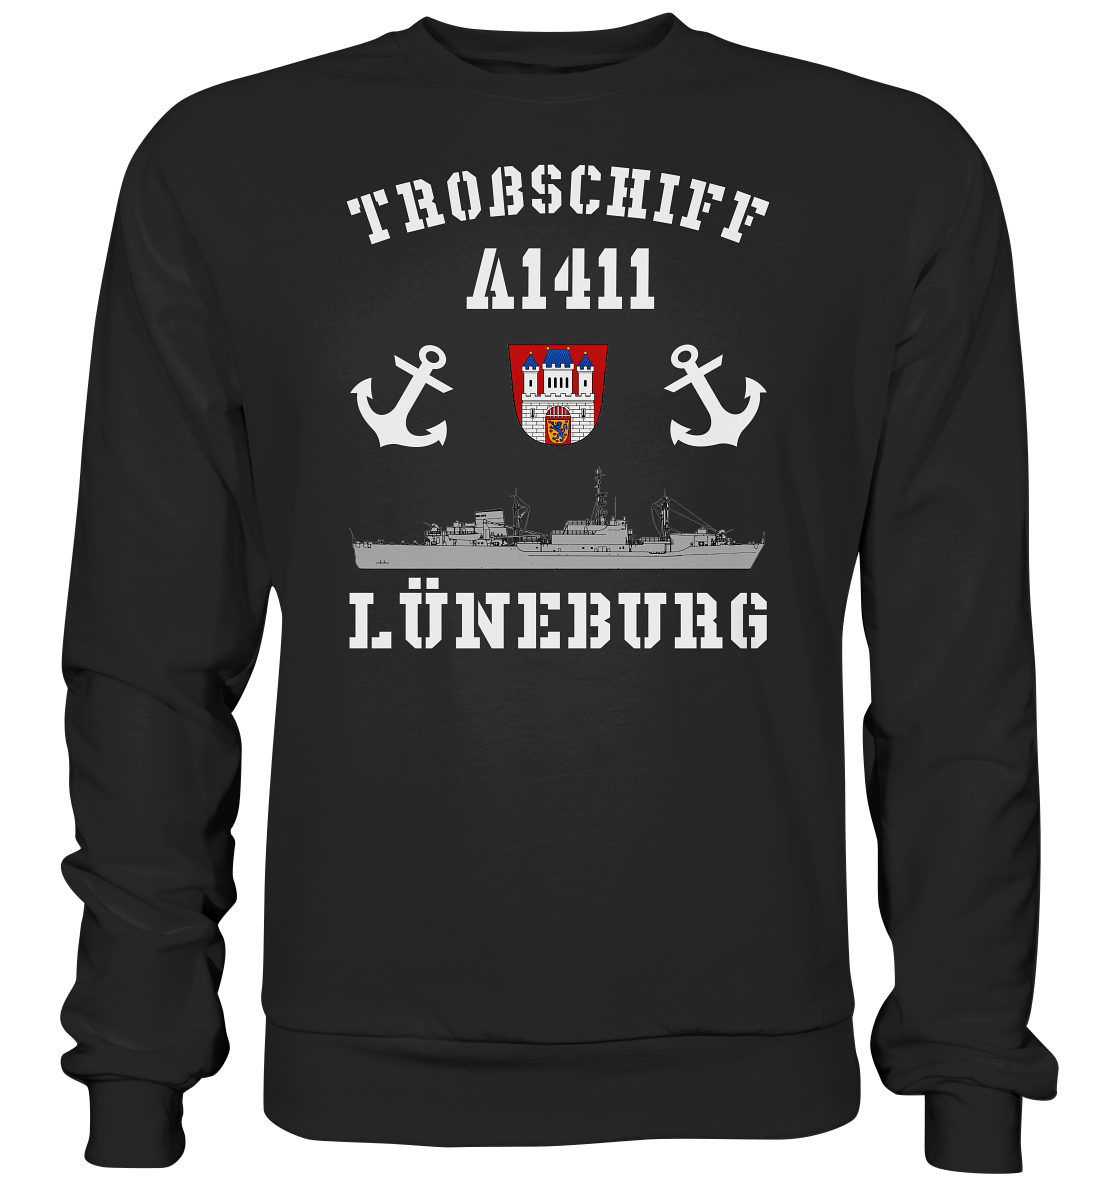 Troßschiff A1411 LÜNEBURG - Premium Sweatshirt